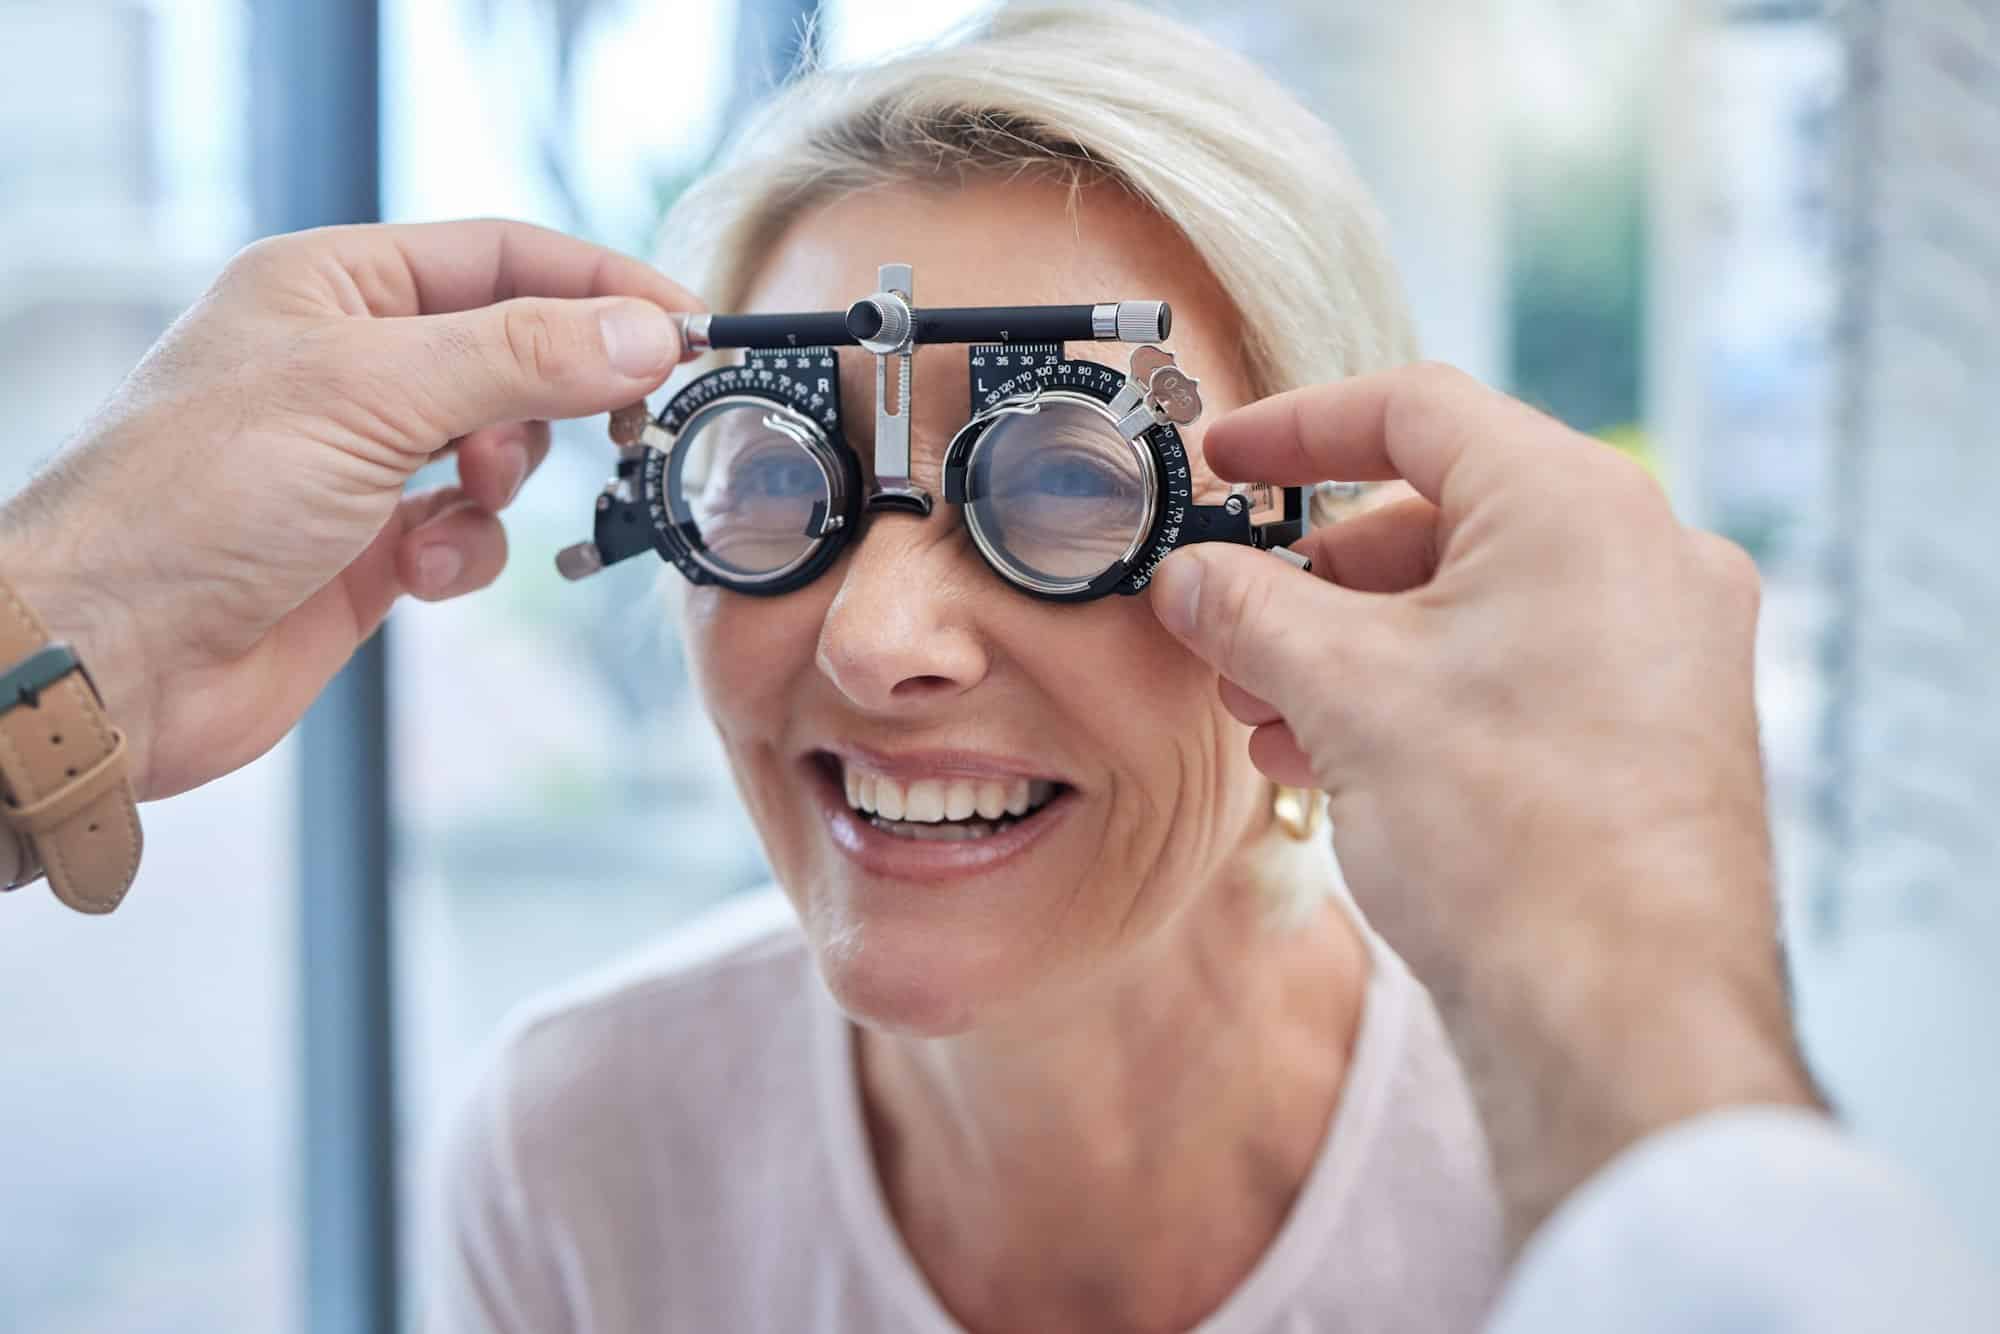 Votre vision mérite les meilleurs soins : consultez un ophtalmologue à genève